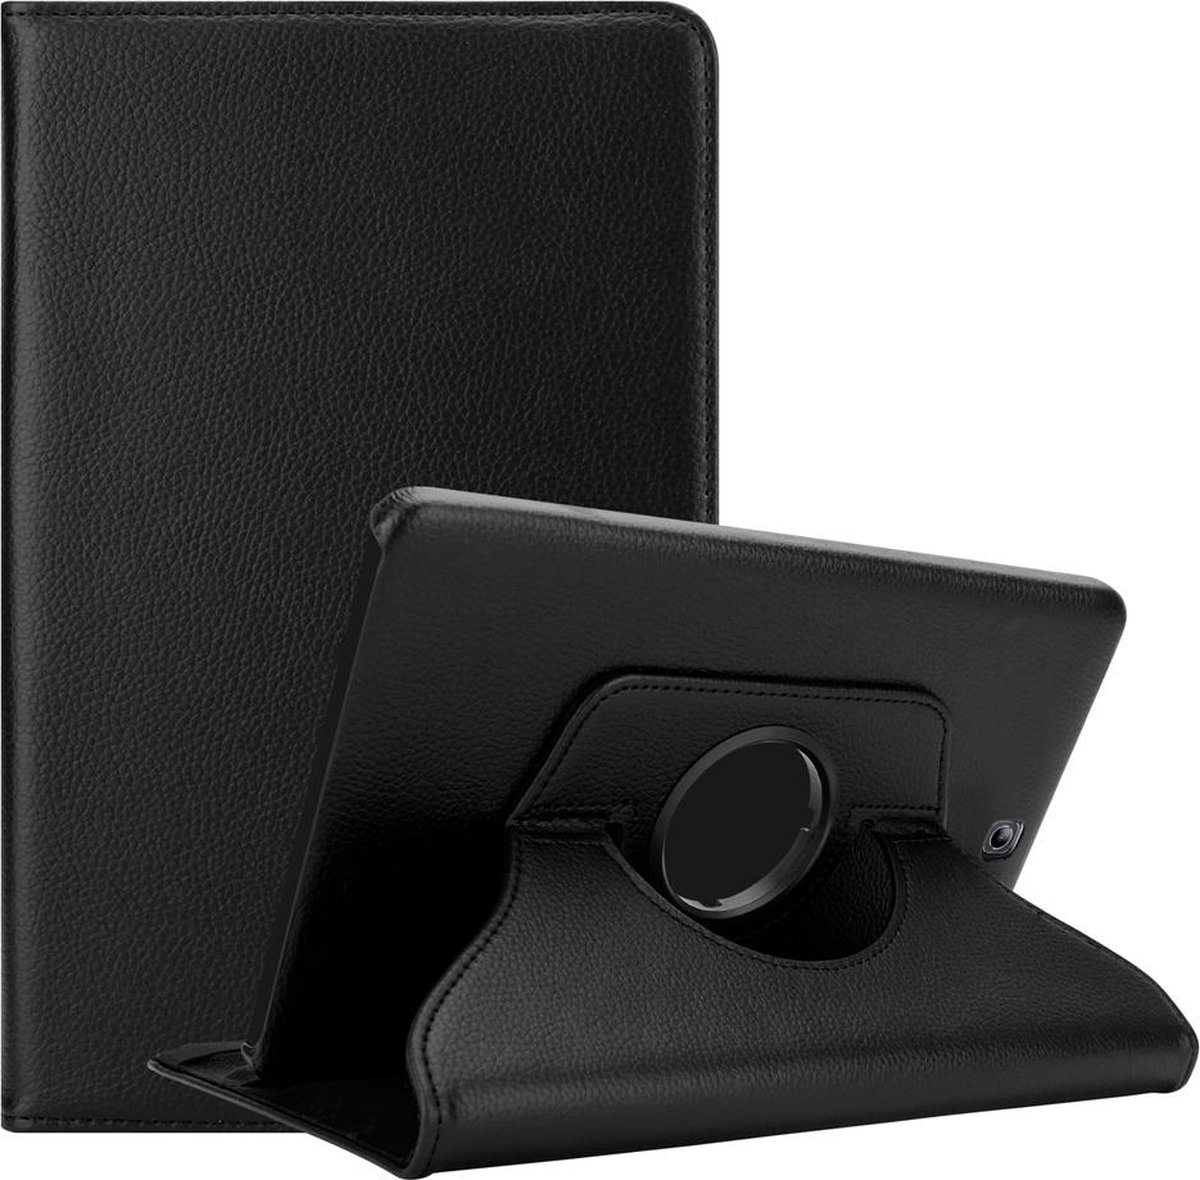 Cadorabo Tablet Hoesje voor Samsung Galaxy Tab S2 (8 inch) in OUDERLING ZWART - Beschermhoes ZONDER auto Wake Up, met stand functie en elastische band sluiting Book Case Cover Etui